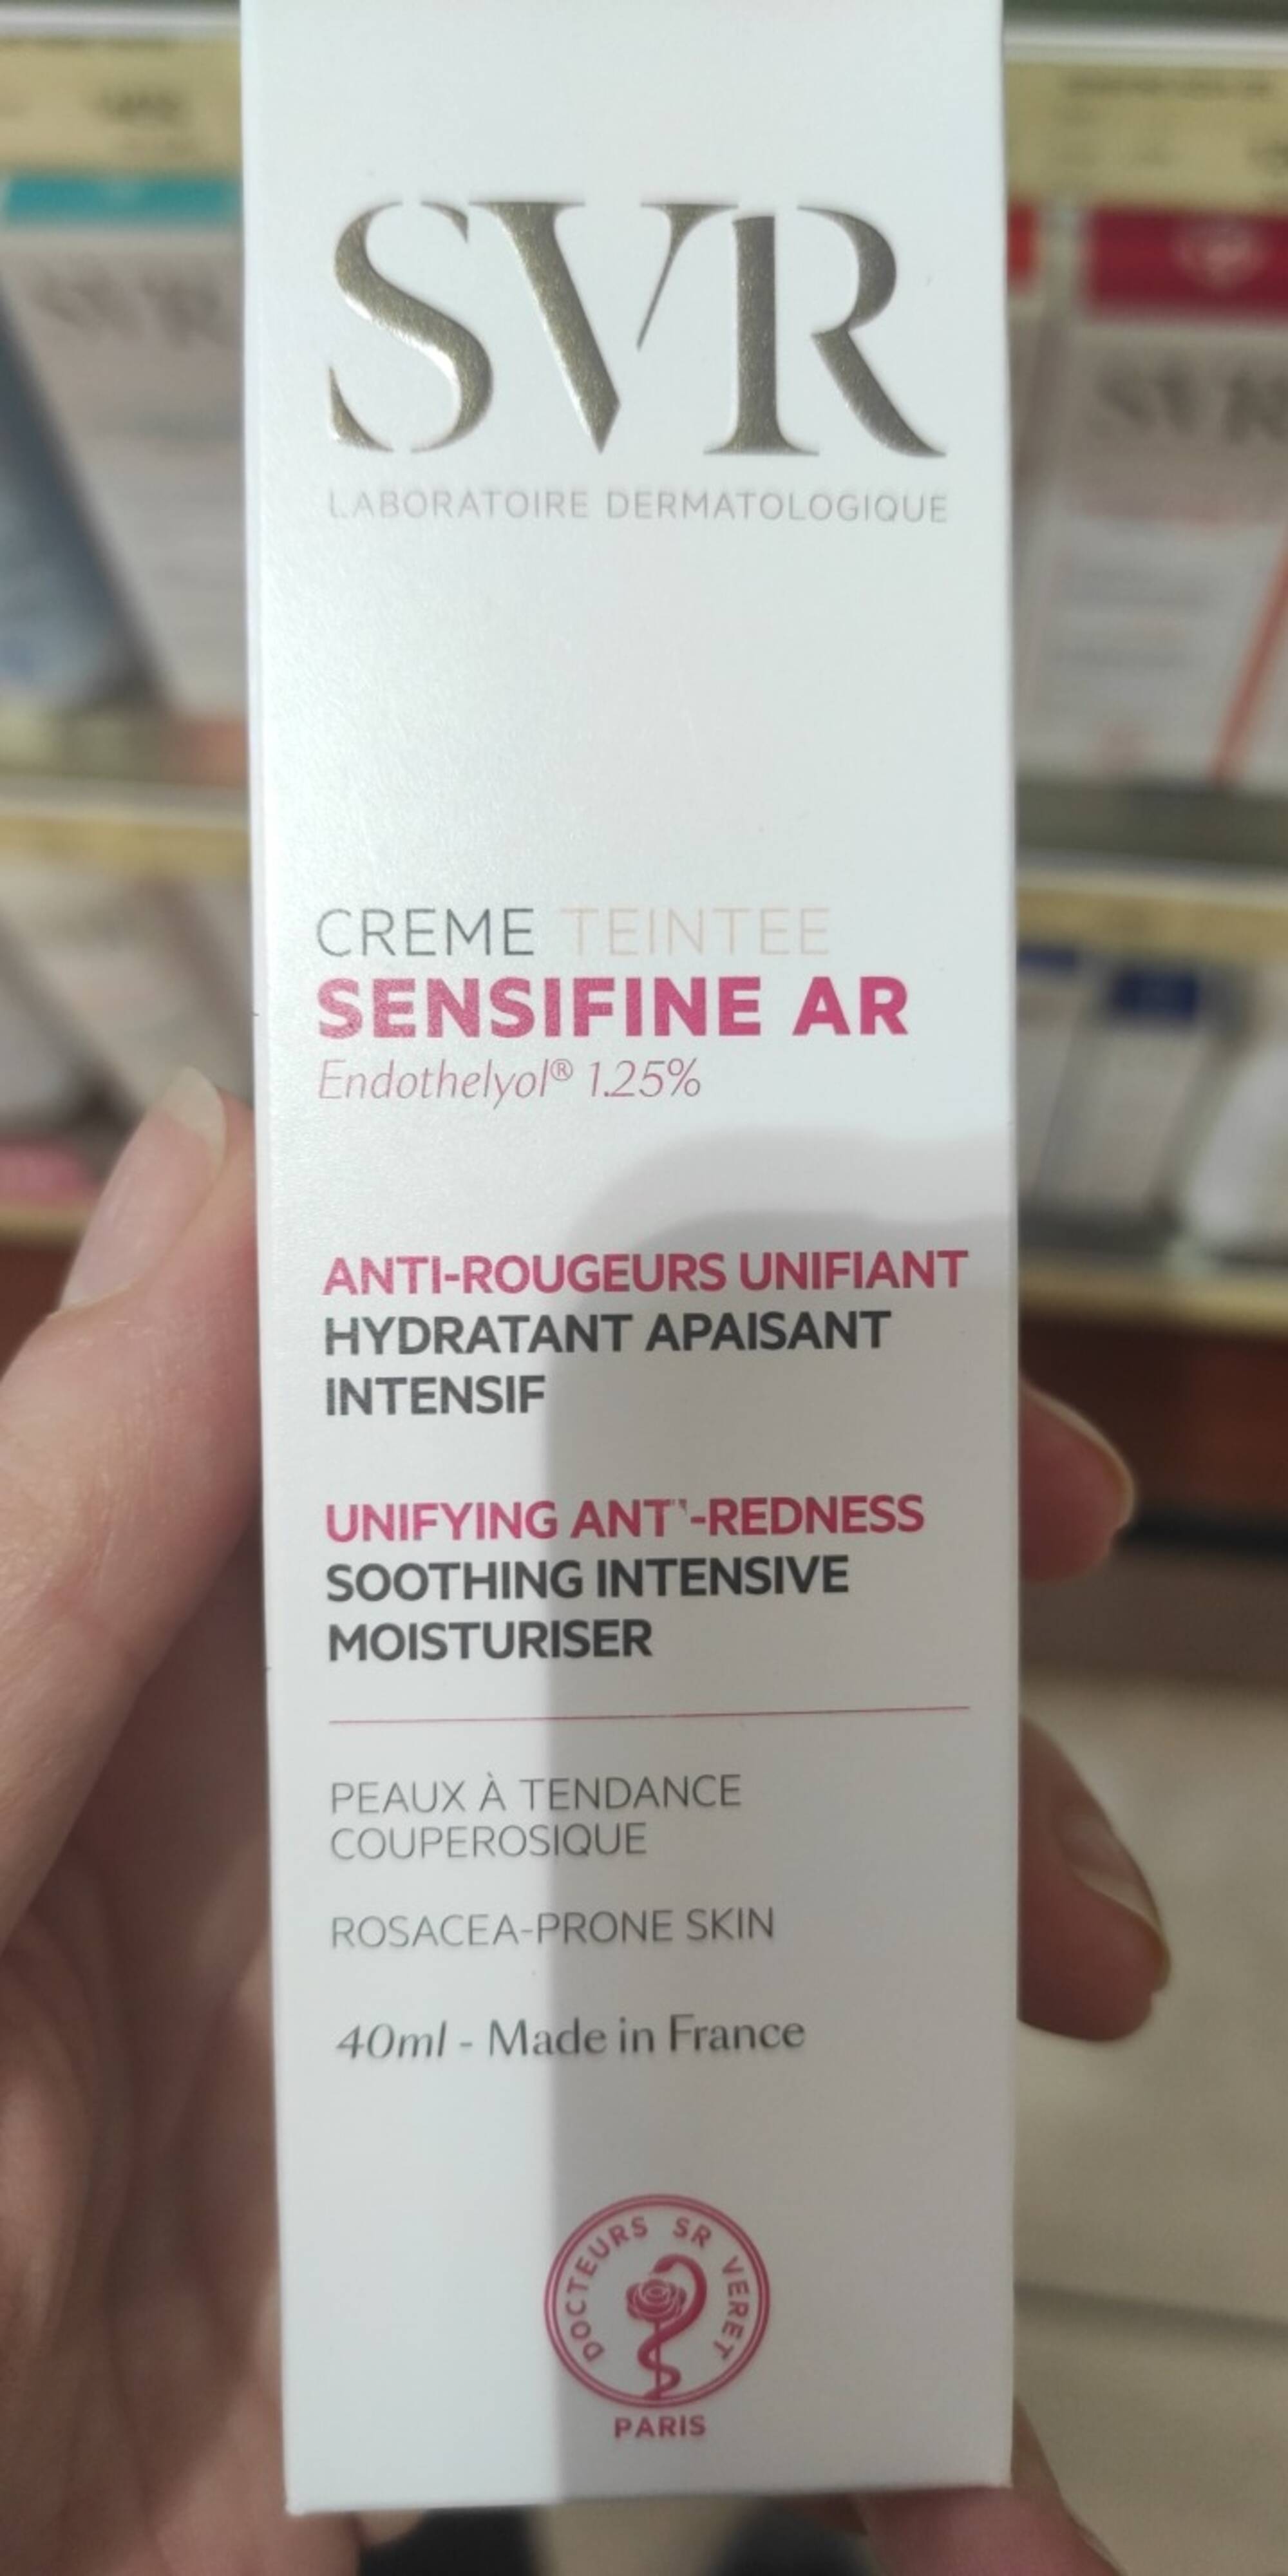 SVR - Sensifine AR - Crème teintée anti-rougeurs unifiant